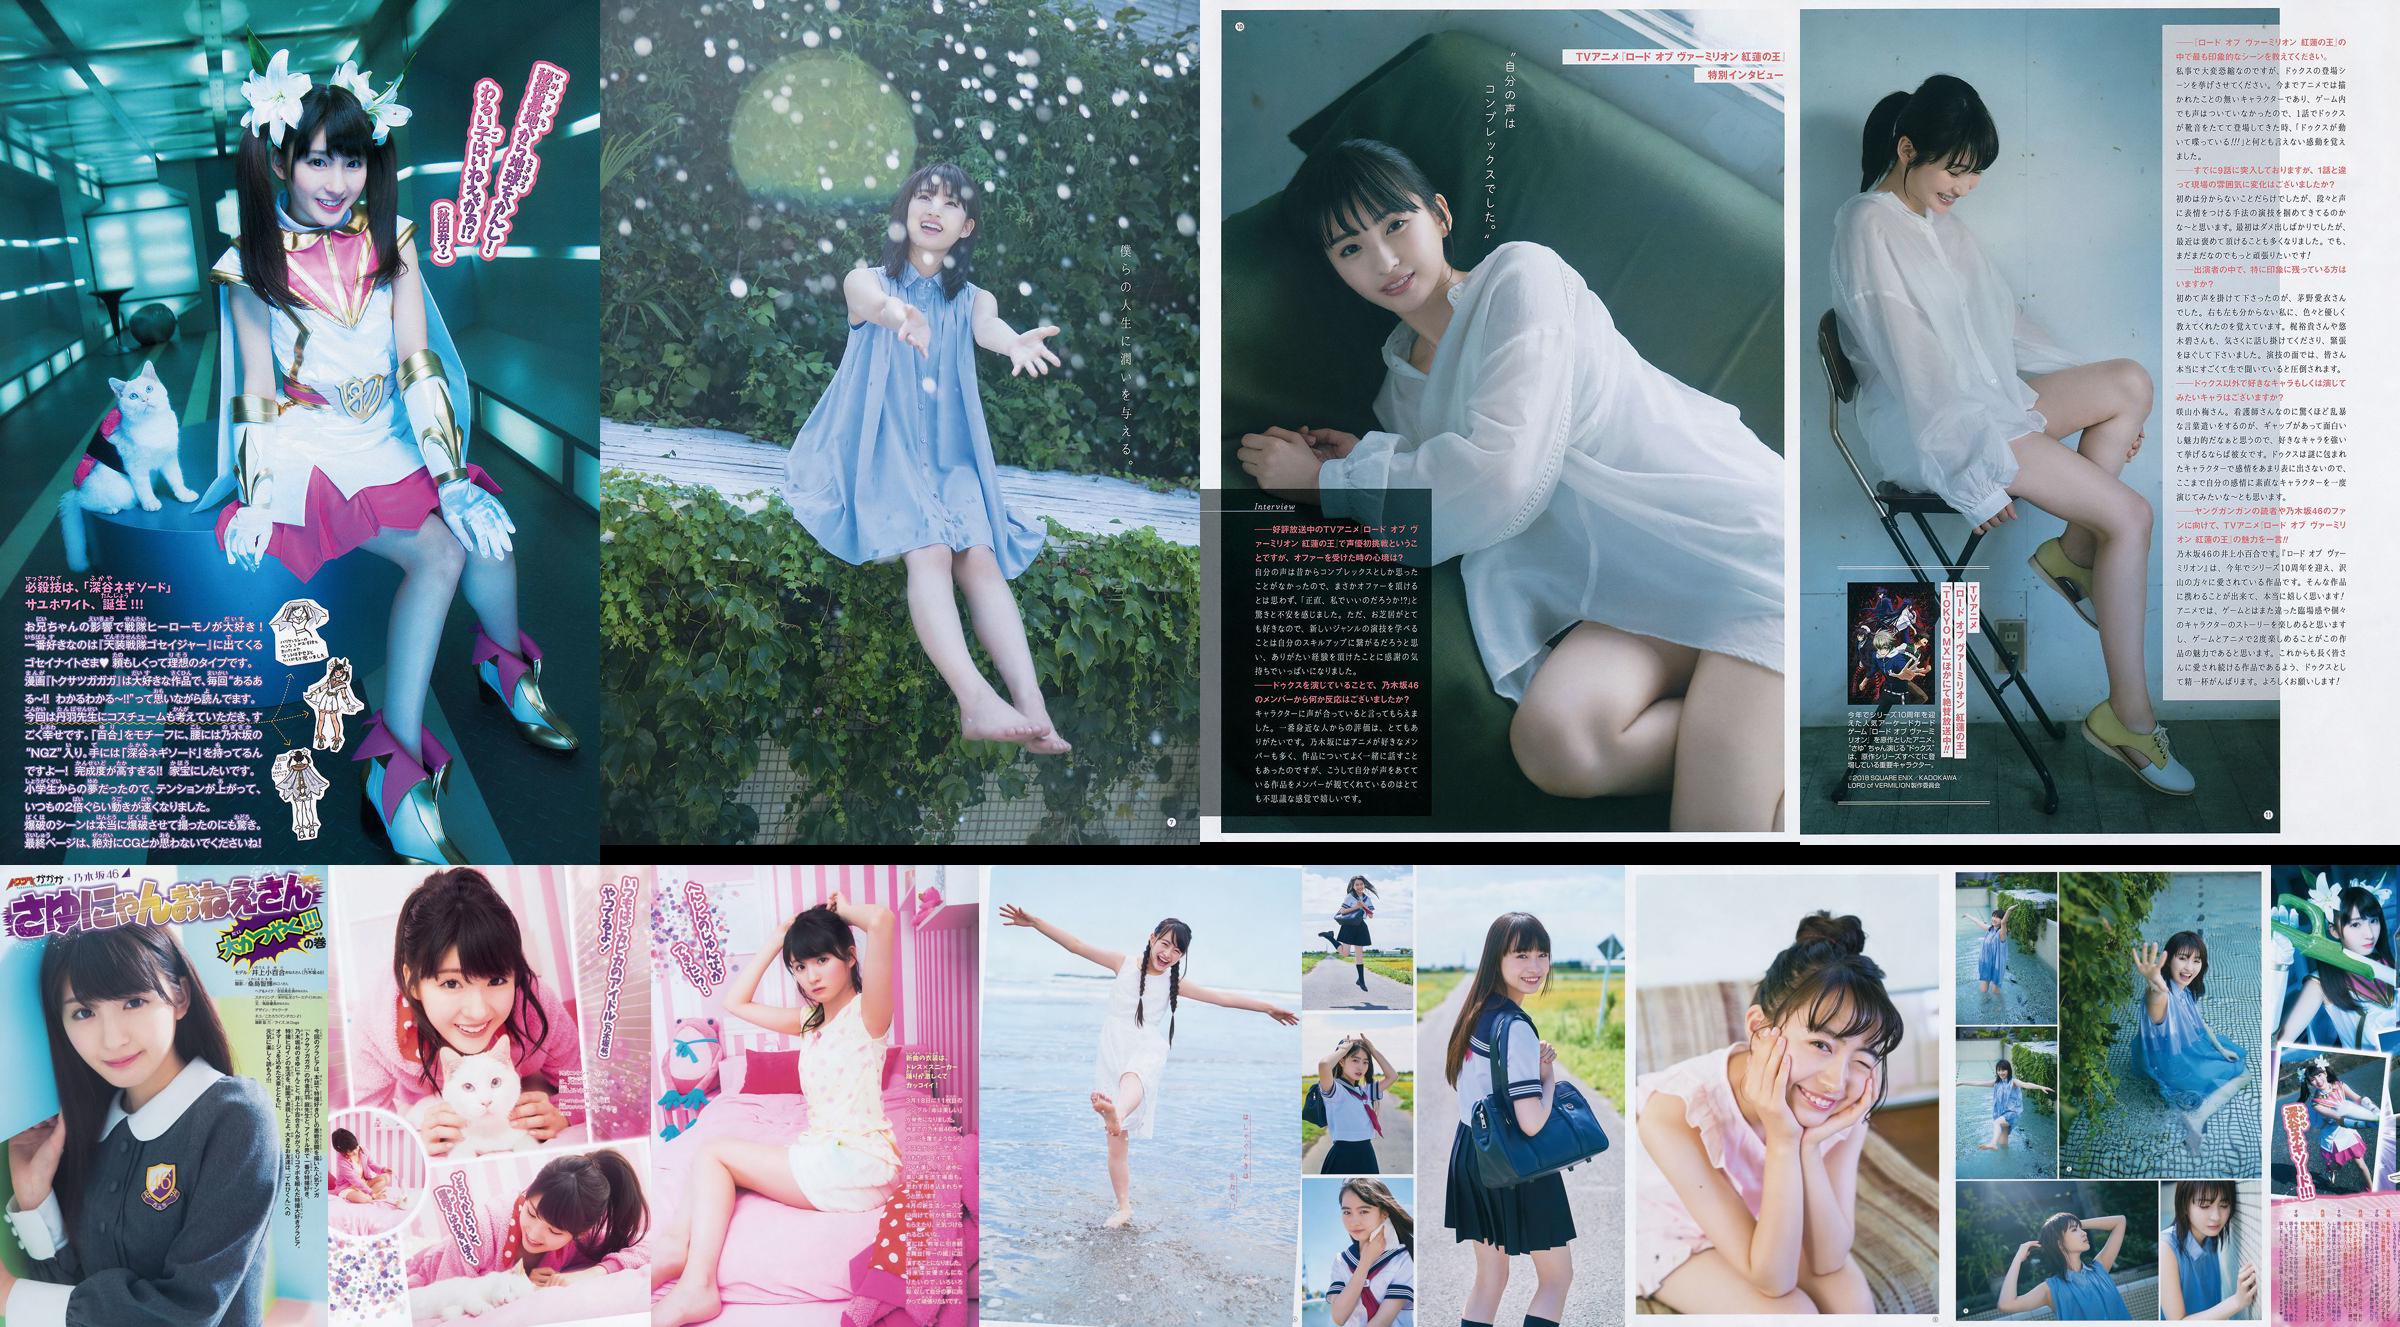 [Young Gangan] Sayuri Inoue Its original sand 2018 No.18 Photo Magazine No.9e29ee Page 3